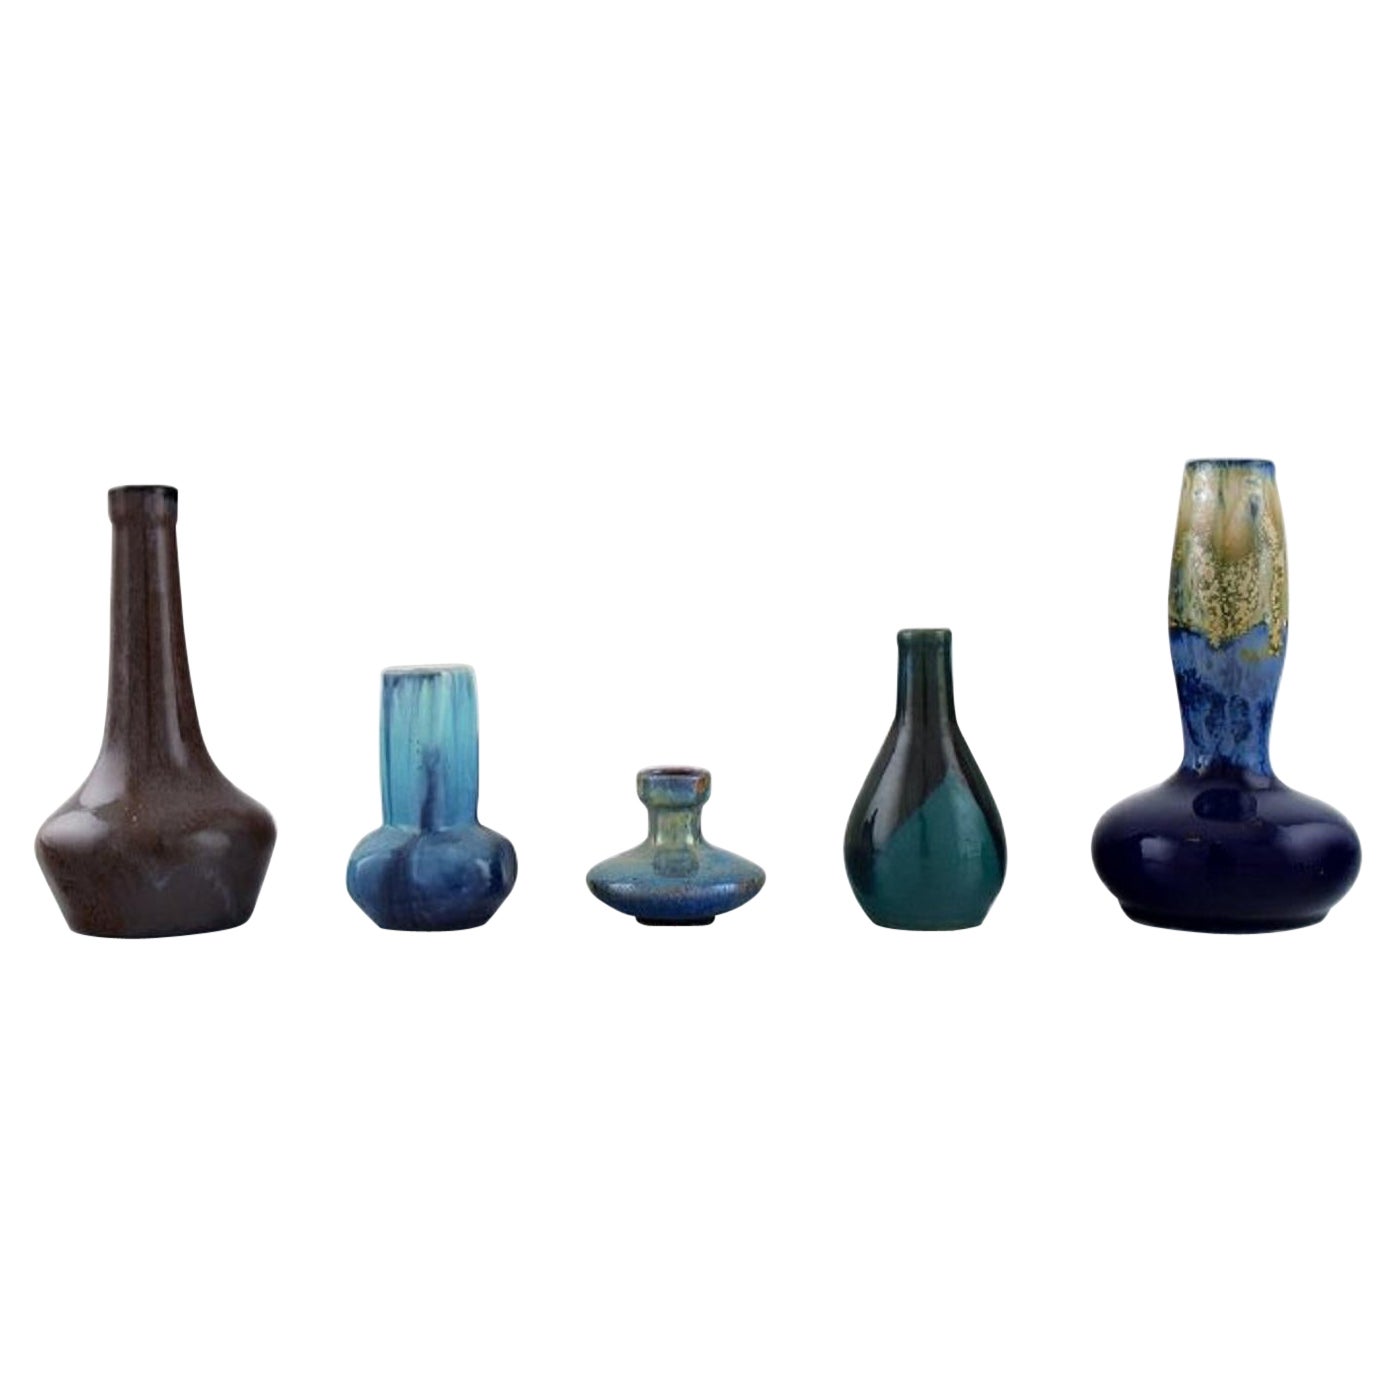 Five Belgian Miniature Vases in Glazed Ceramics, Mid-20th C